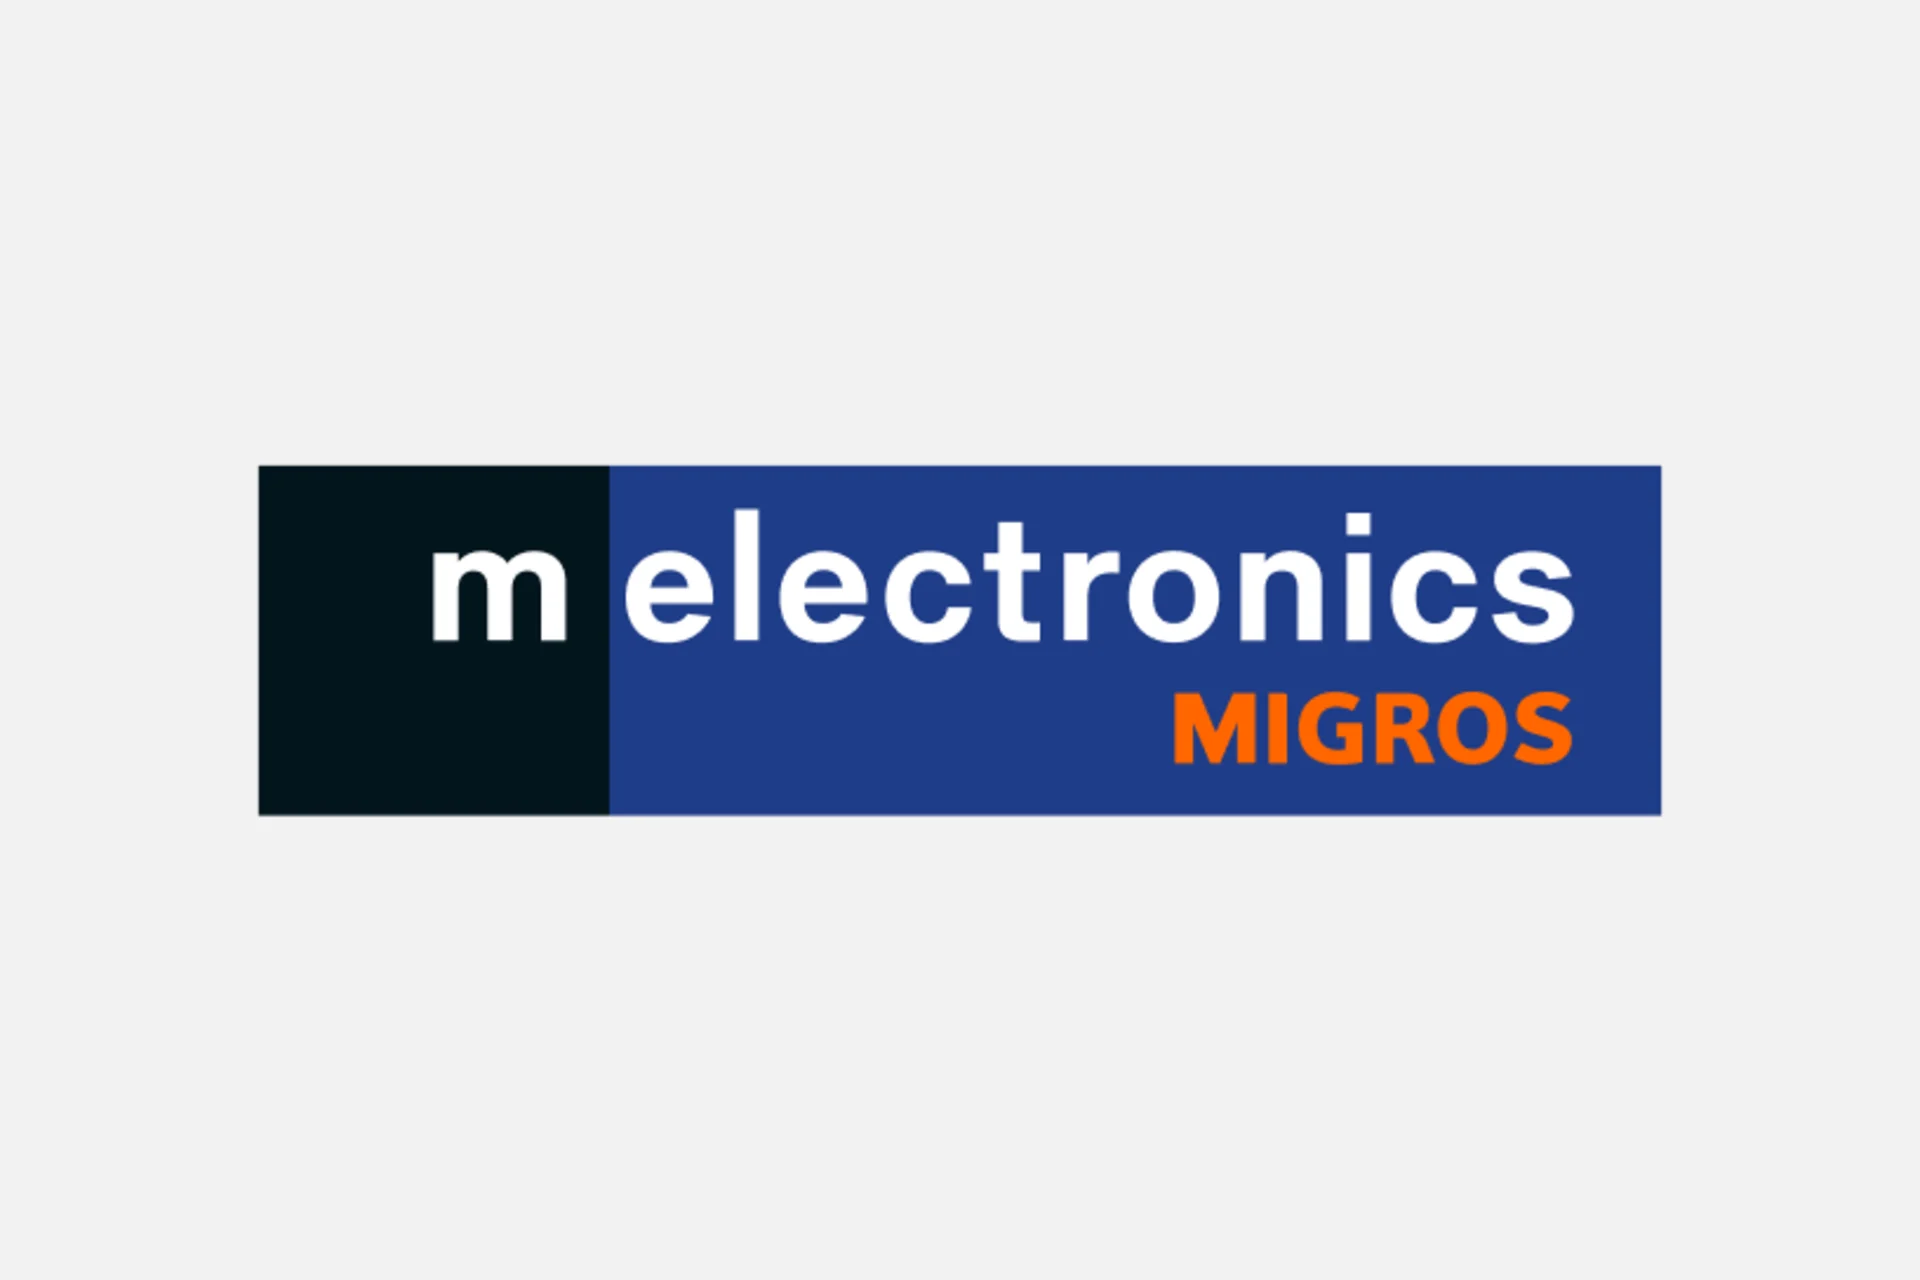 Logo Melectronics